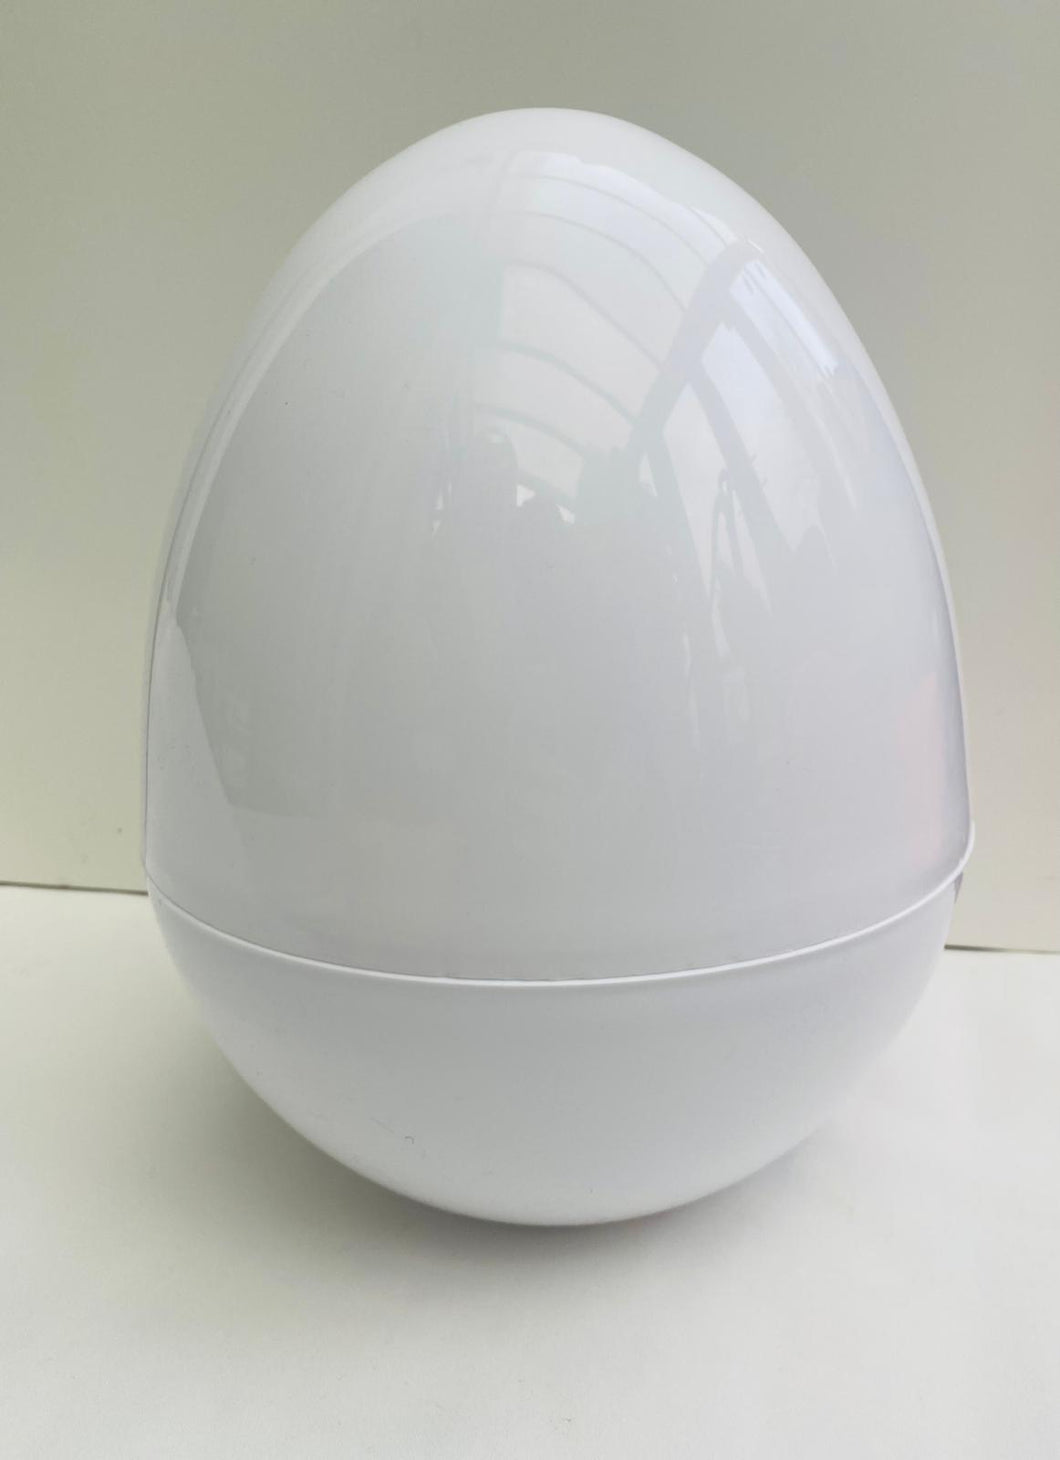 Giant Plastic Egg. 36cm 14inch Tall - WHITE - PACK OF 6